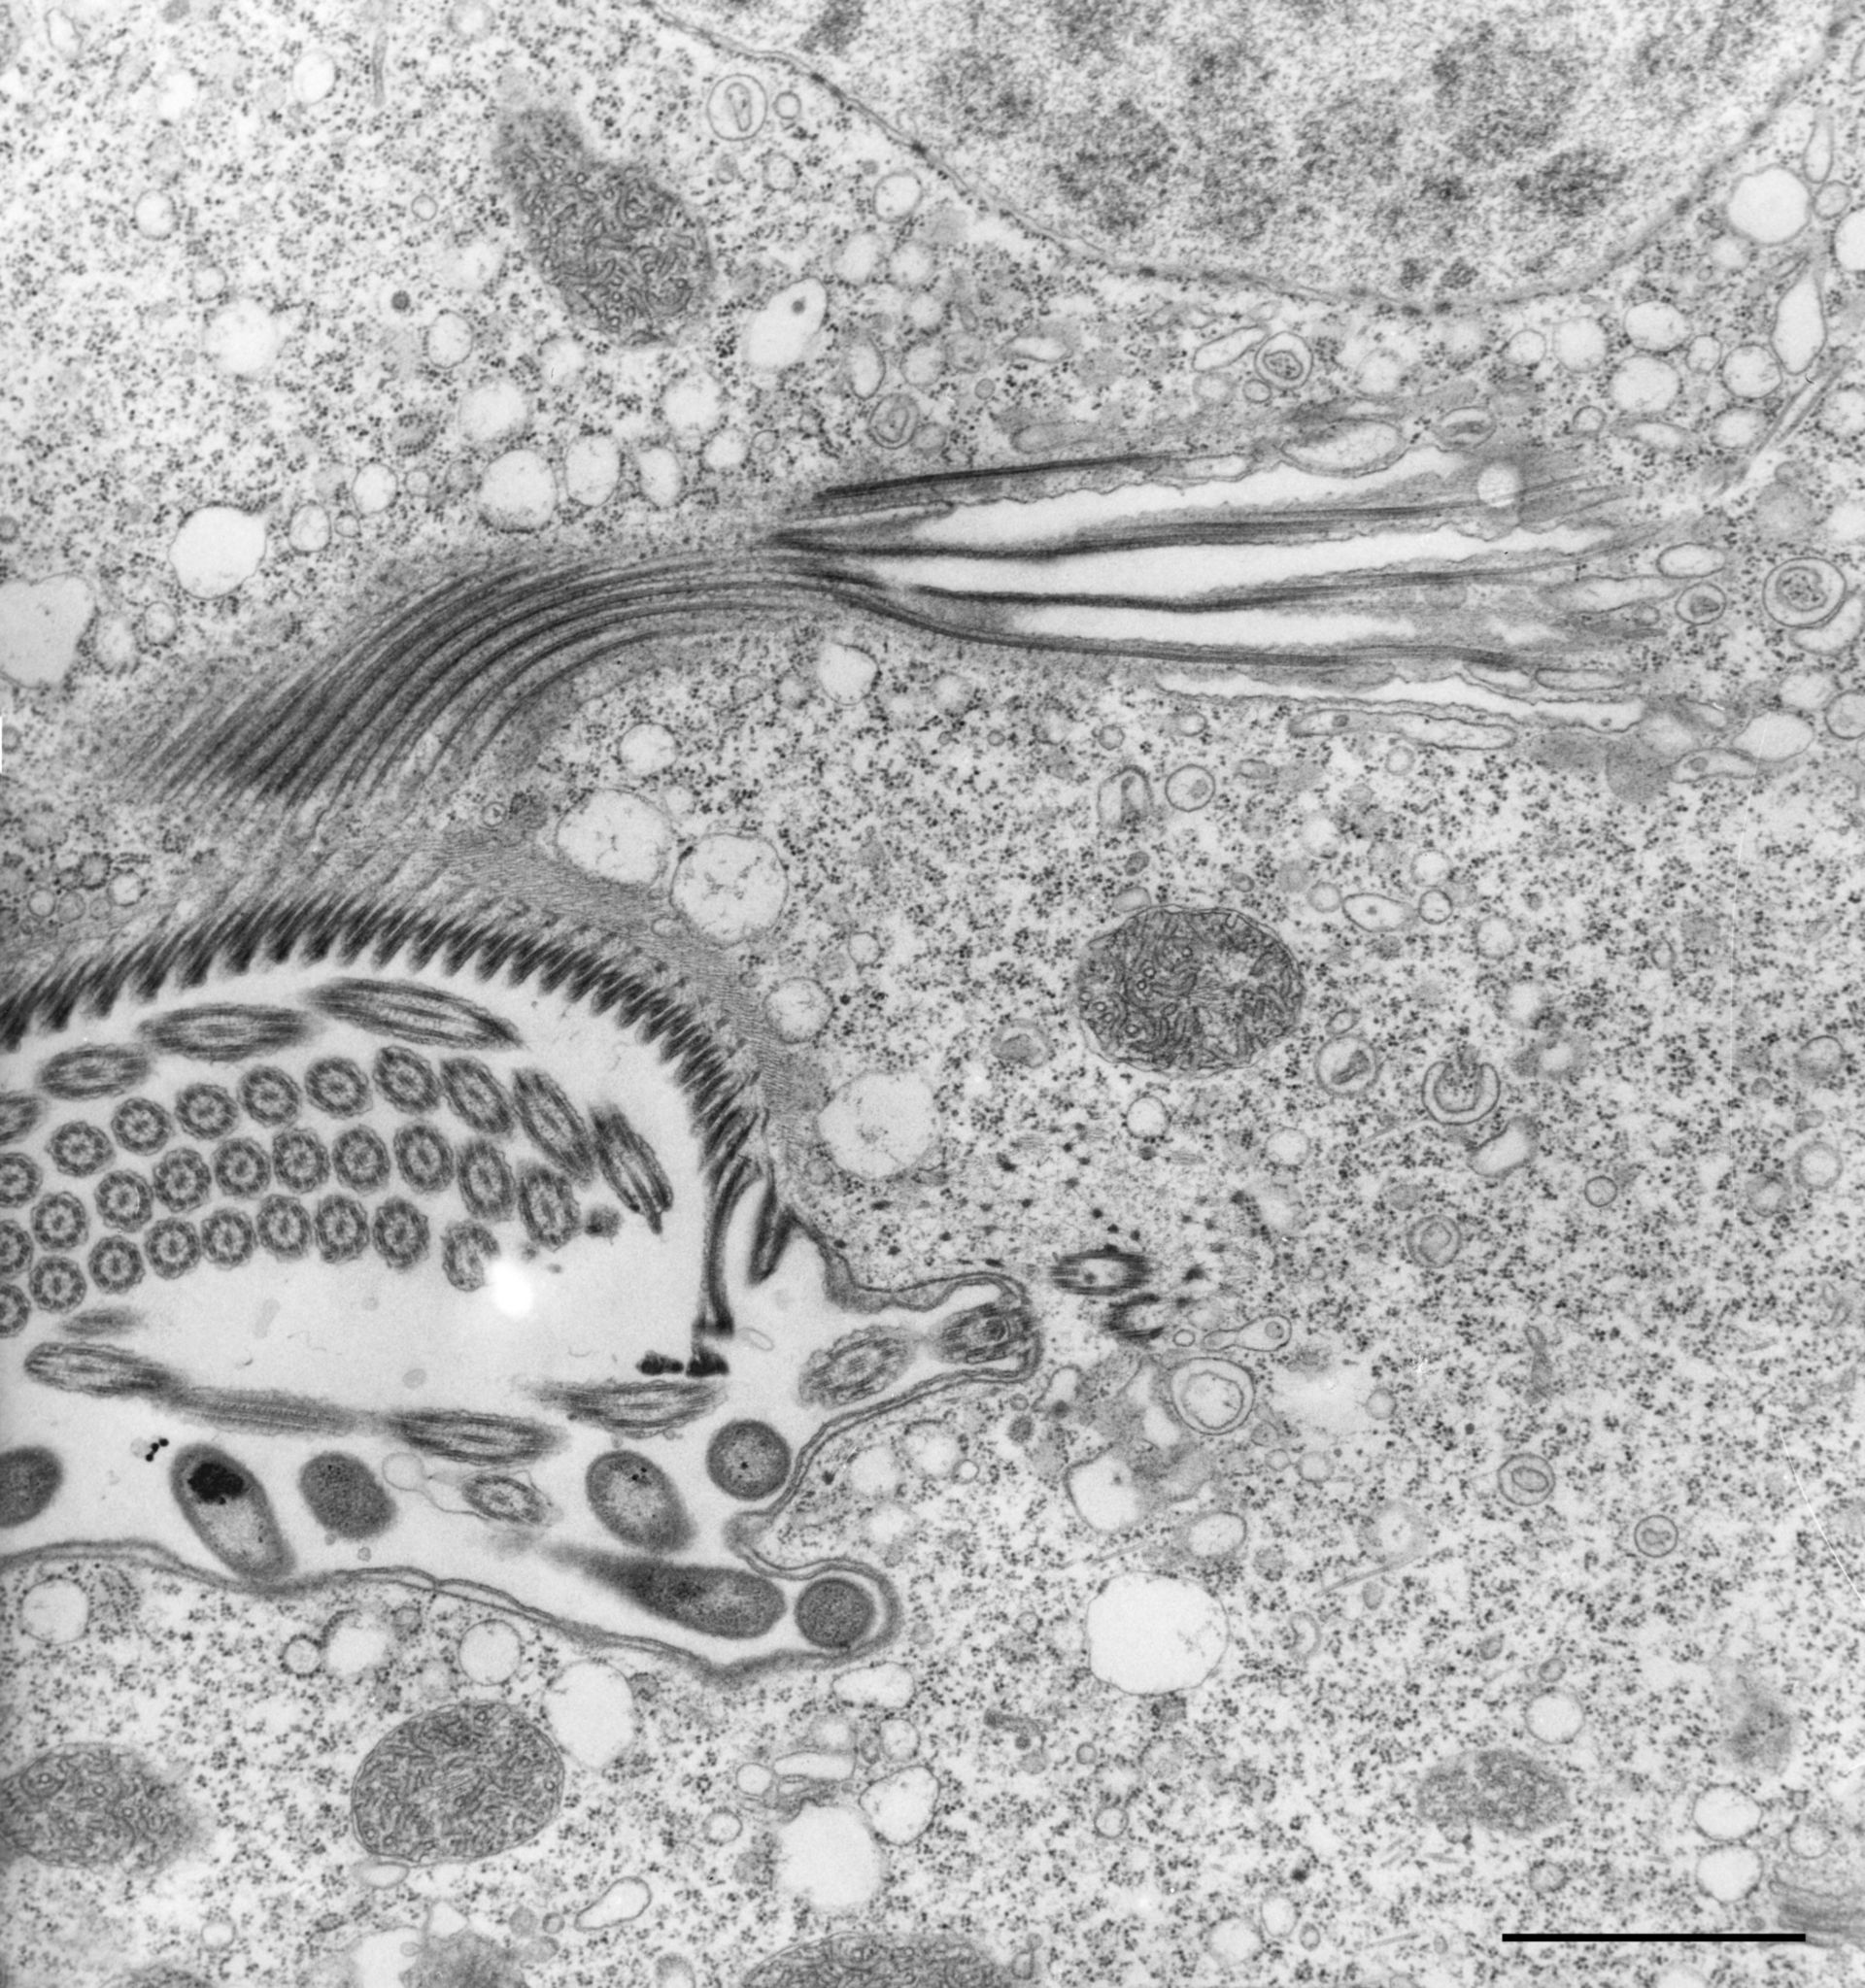 Vorticella convallaria (Cortical microtubule cytoskeleton) - CIL:36268